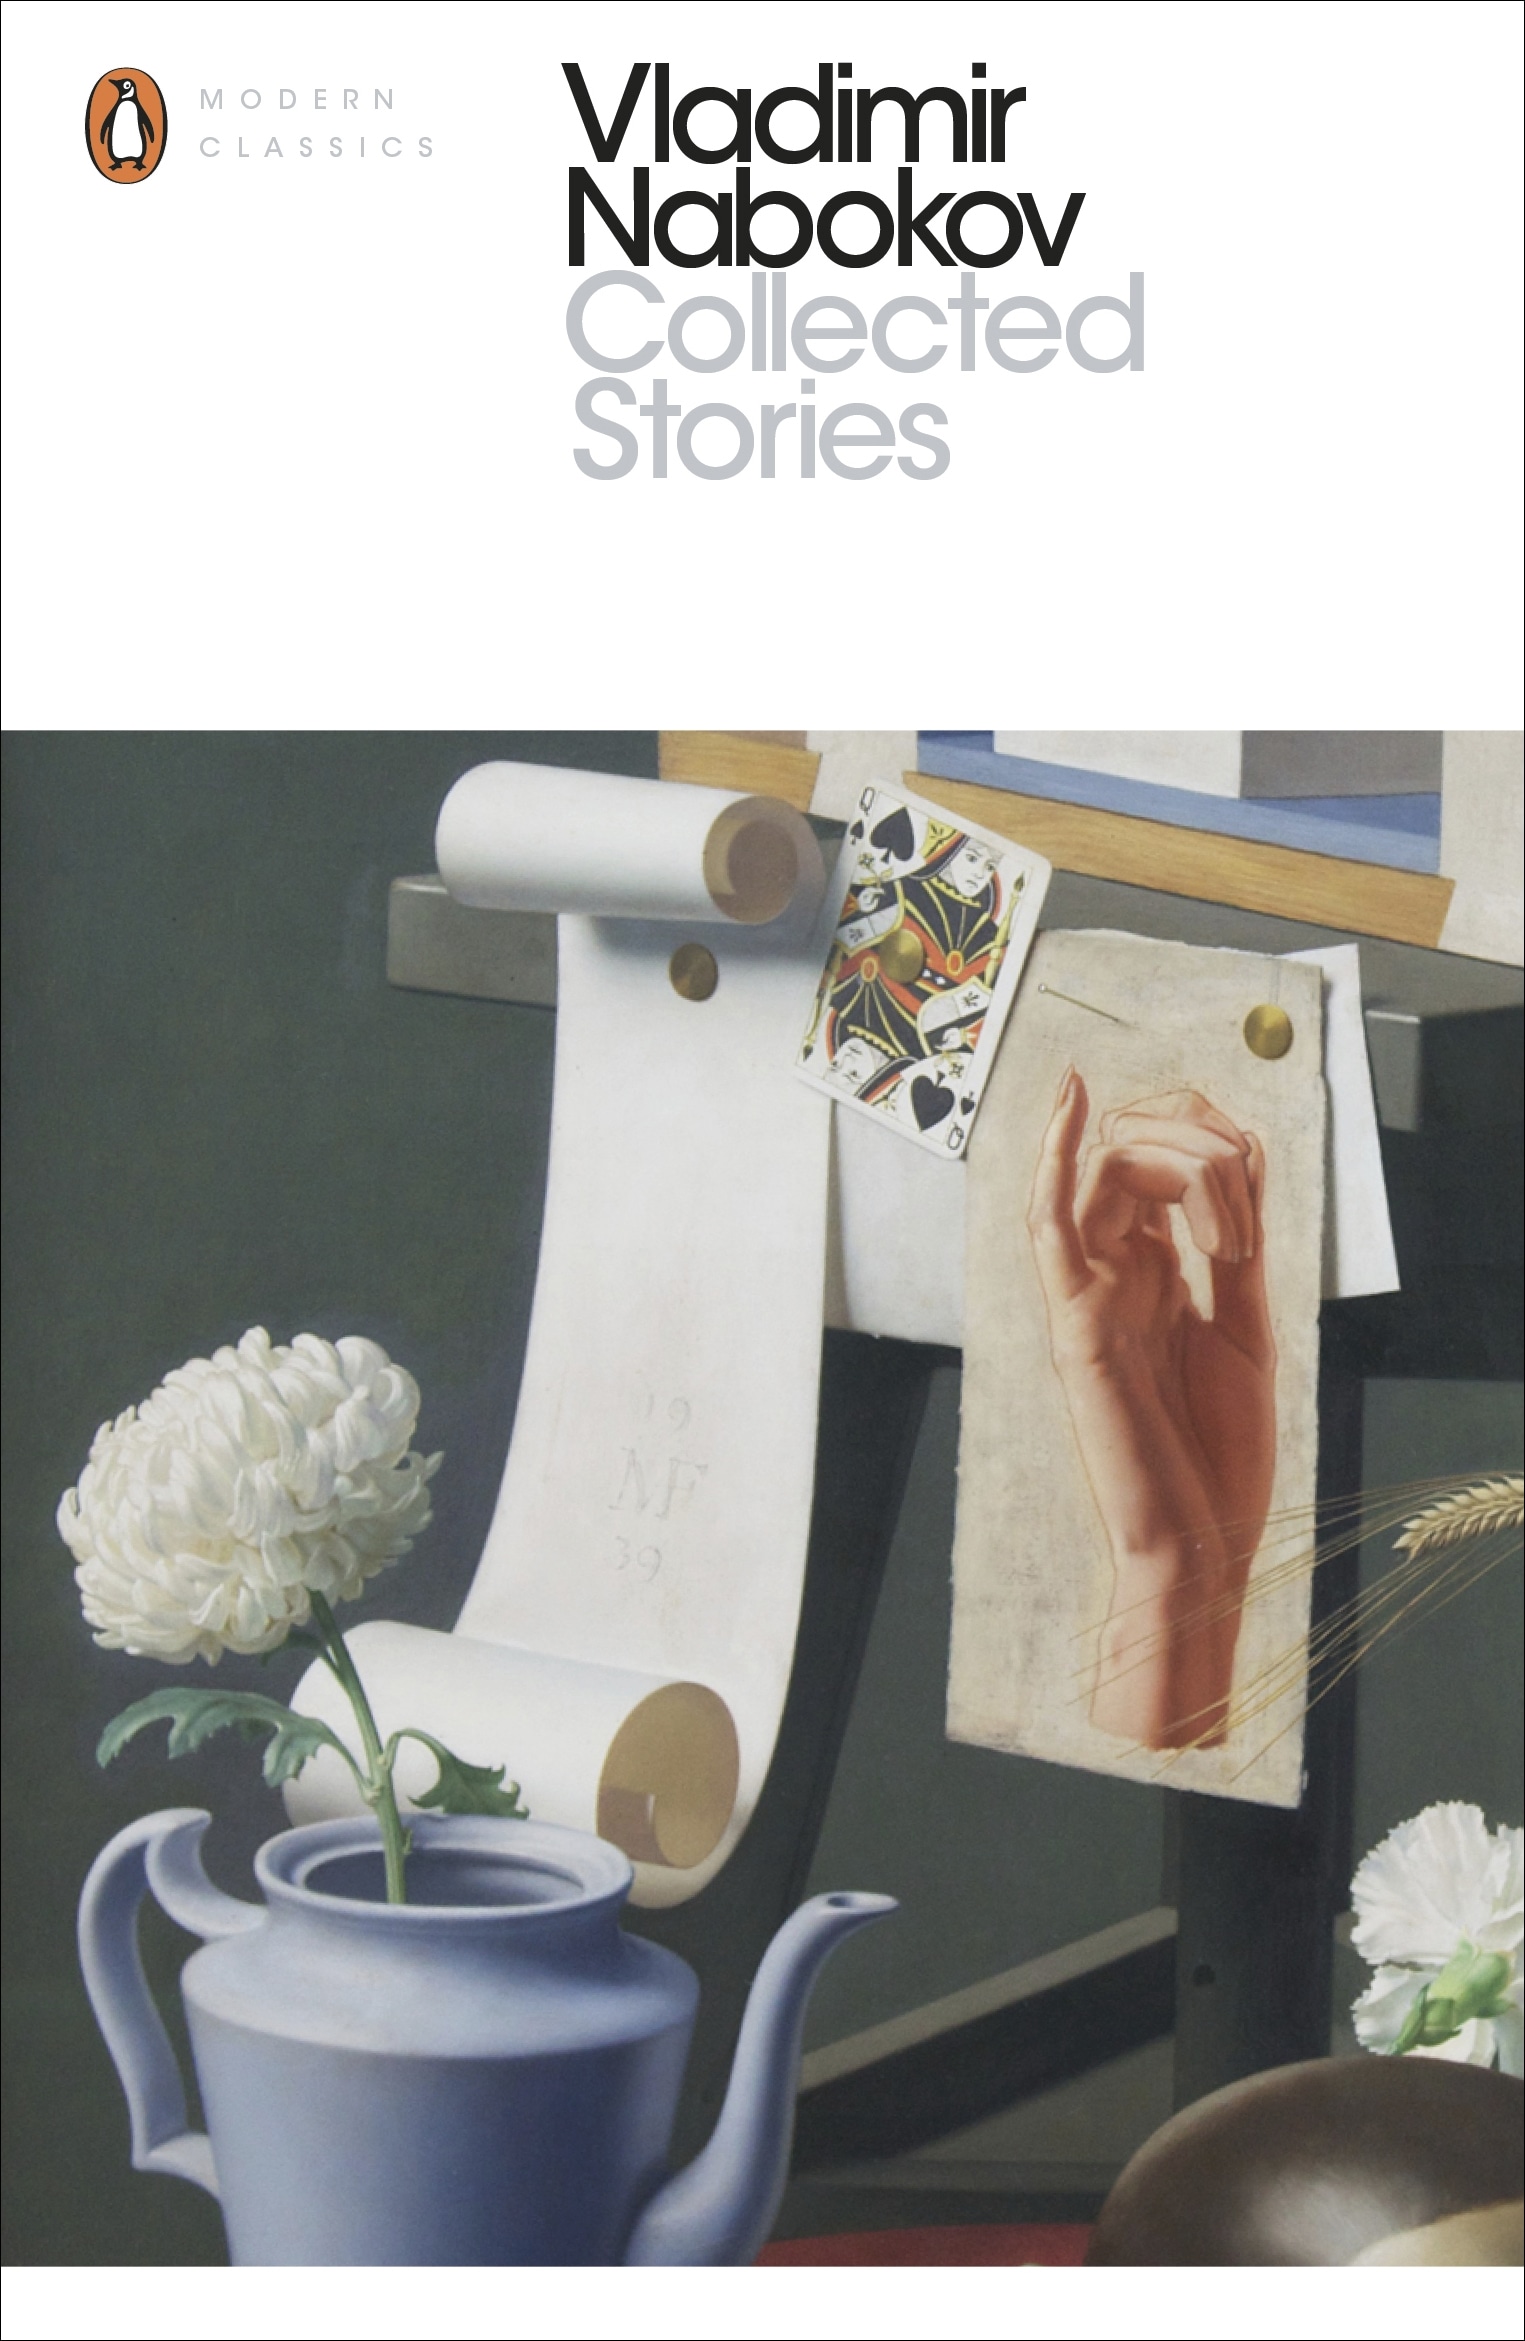 Book “Collected Stories” by Vladimir Nabokov, Dmitri Nabokov — February 22, 2001